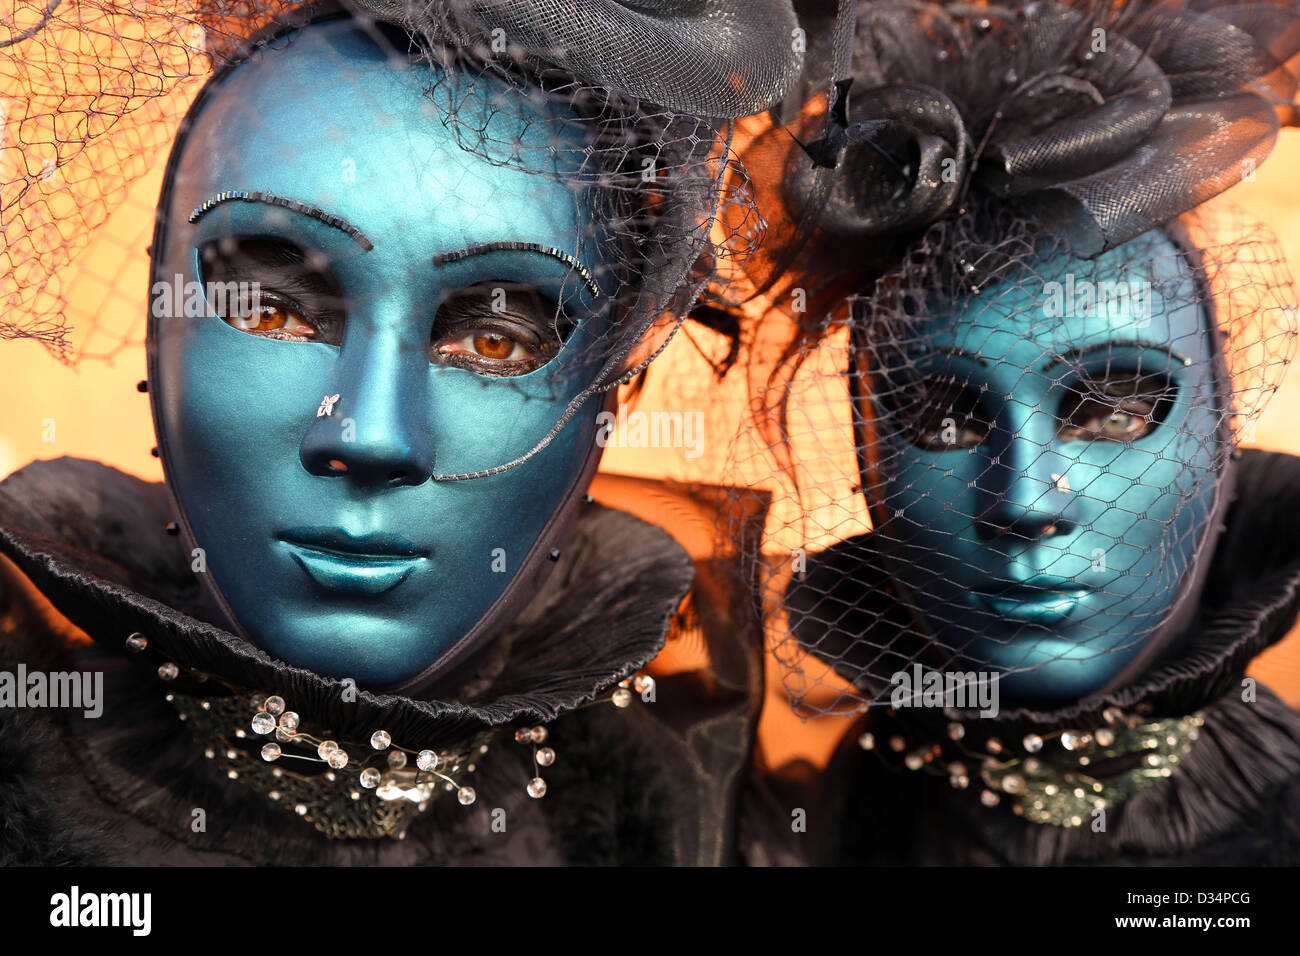 Venedig, Italien. 9. Februar 2013. Das Wochenende war beliebt auf der Venedig Karneval 2013 als Menschenmassen strömten, um die fantastischen Kostüme und Masken in Venedig zu sehen. Bildnachweis: Paul Brown / Alamy Live News Stockfoto